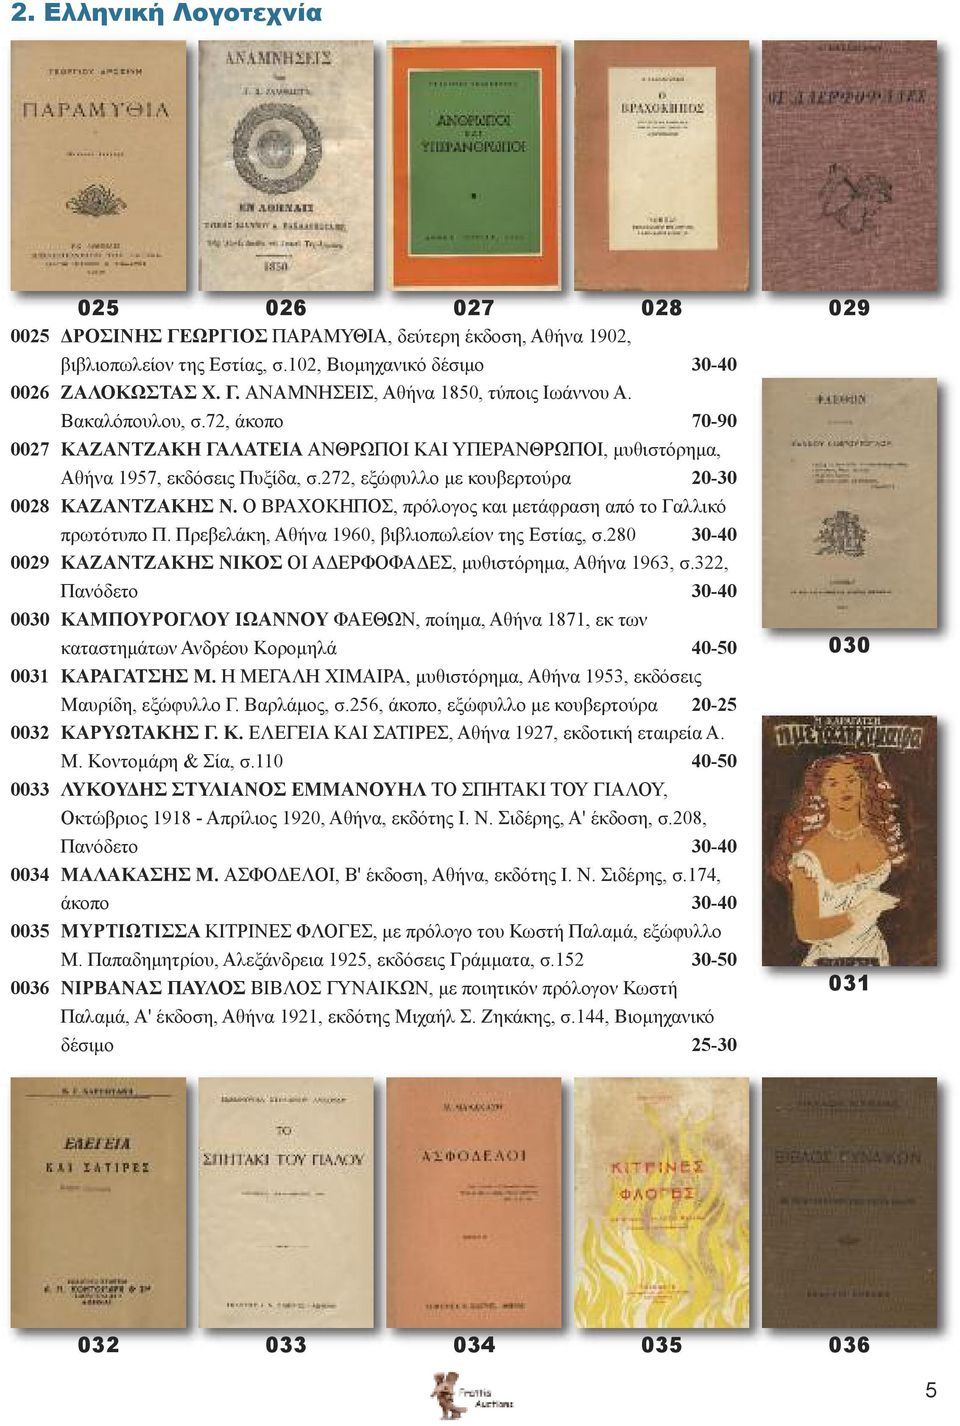 Ο ΒΡΑΧΟΚΗΠΟΣ, πρόλογος και μετάφραση από το Γαλλικό πρωτότυπο Π. Πρεβελάκη, Αθήνα 1960, βιβλιοπωλείον της Εστίας, σ.280 30-40 0029 ΚΑΖΑΝΤΖΑΚΗΣ ΝΙΚΟΣ ΟΙ ΑΔΕΡΦΟΦΑΔΕΣ, μυθιστόρημα, Αθήνα 1963, σ.